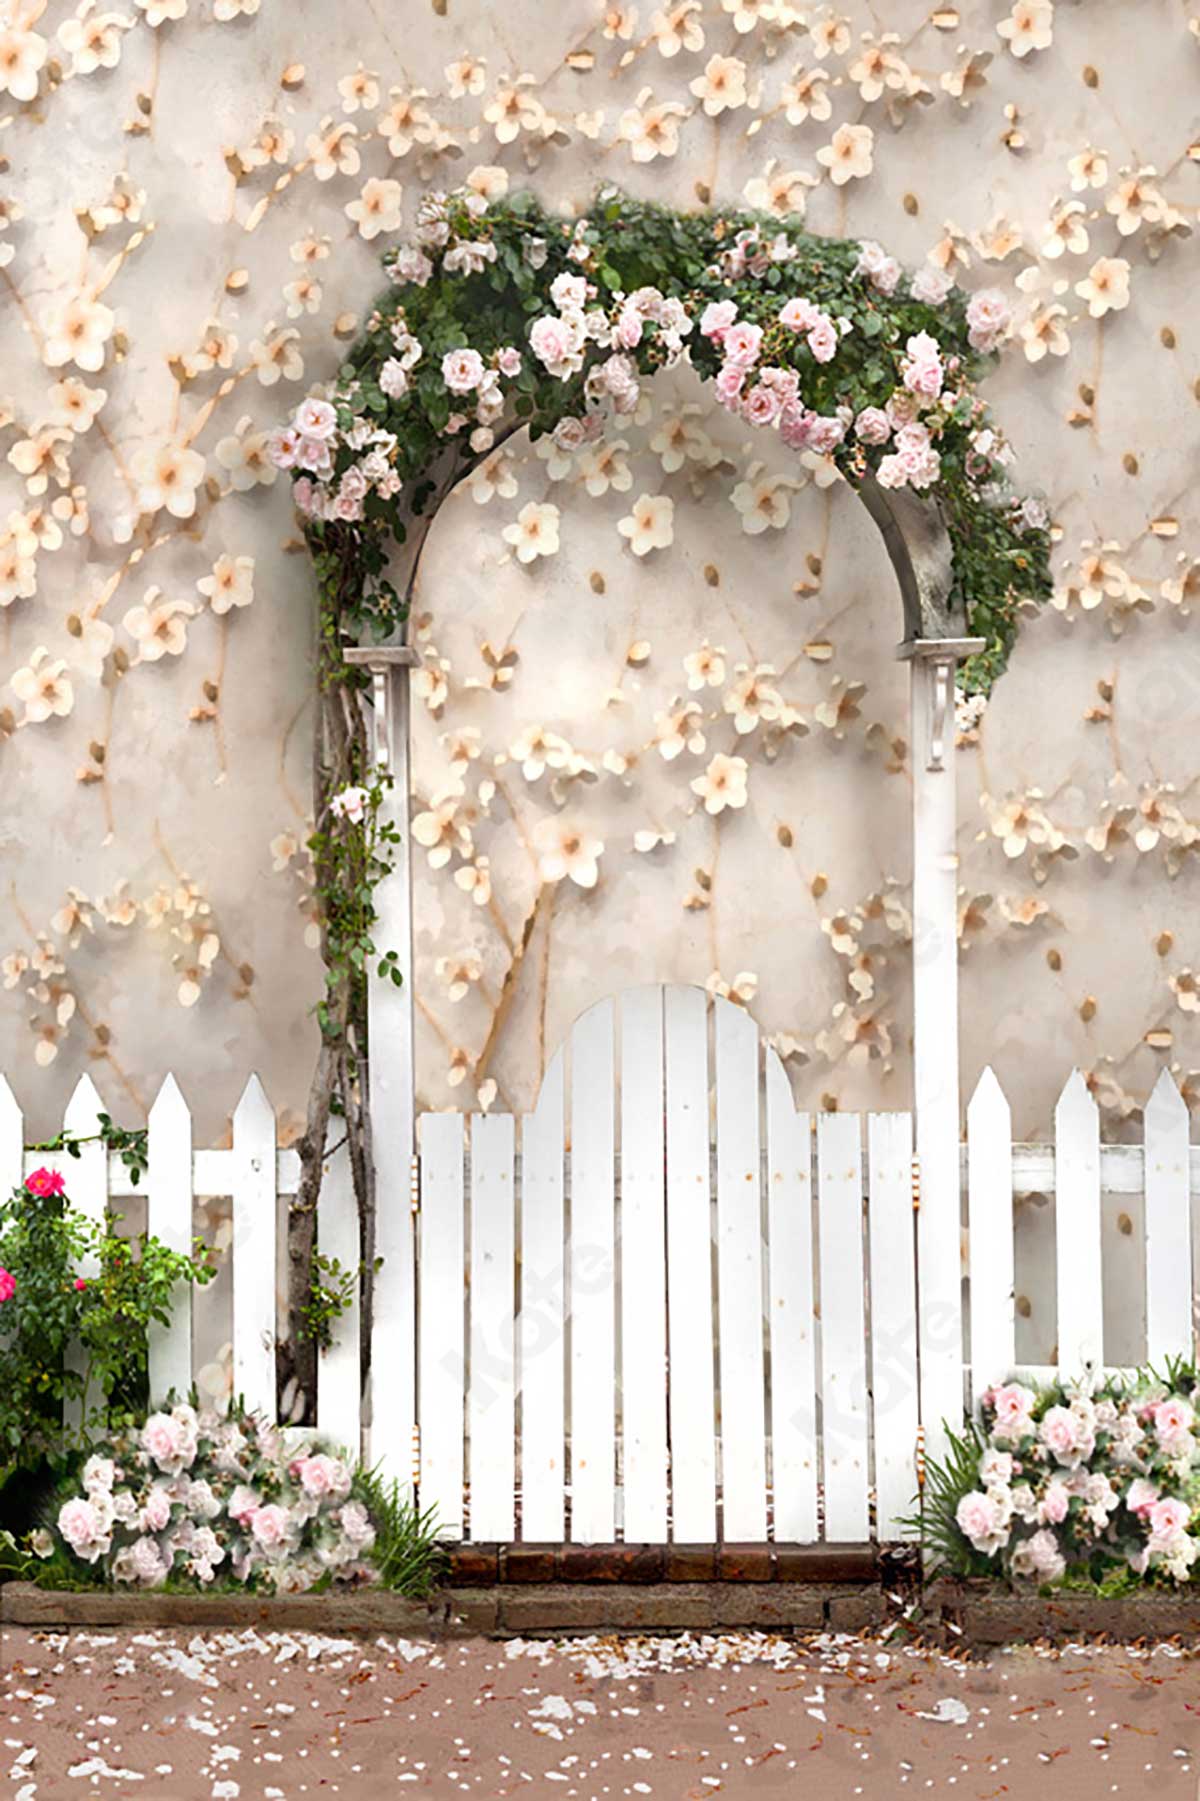 Nếu bạn mong muốn tạo nên một bức ảnh đẹp và đầy cảm hứng cho mẹ vào ngày của mình, thì hãy không bỏ lỡ bức ảnh Kate Spring đã chụp với hoa nền tường tuyệt đẹp. Những bông hoa tinh tế và màu sắc tươi sáng sẽ giúp bạn tạo nên một bức ảnh đẹp và đầy ý nghĩa.